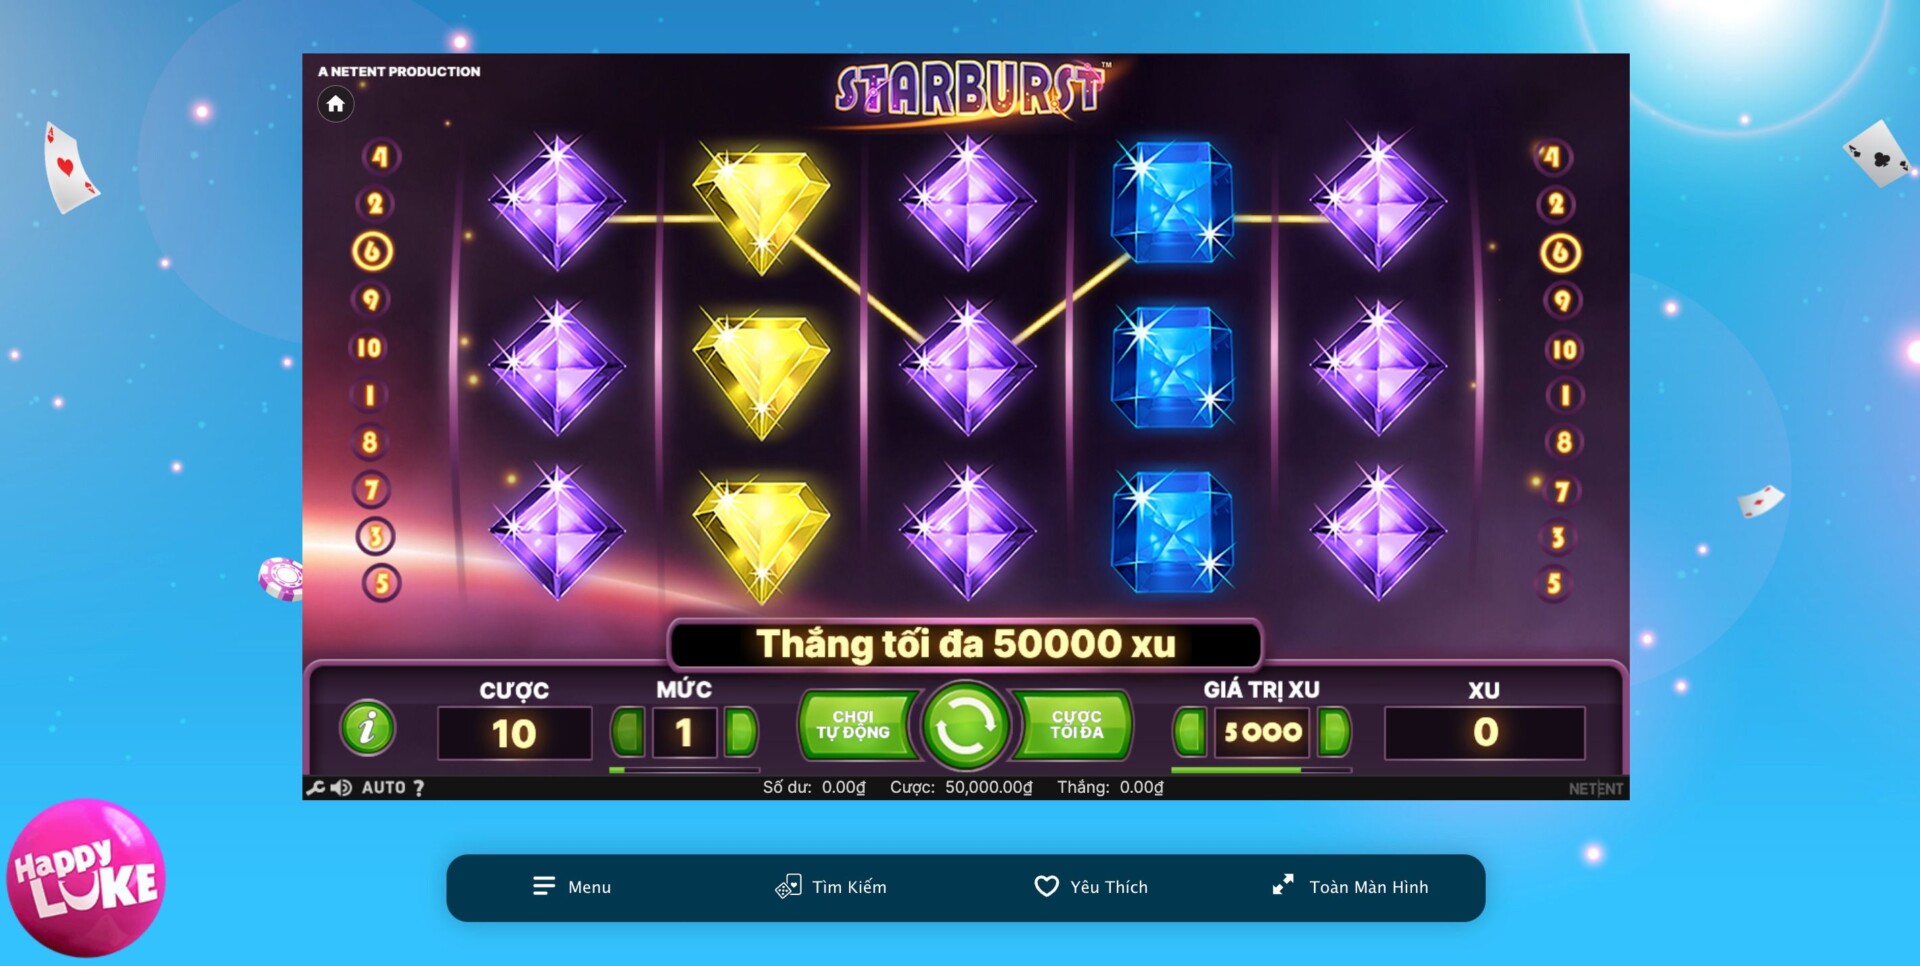 Cách chơi Slot game kim cương Starburst được đánh giá là có sự dễ hiểu